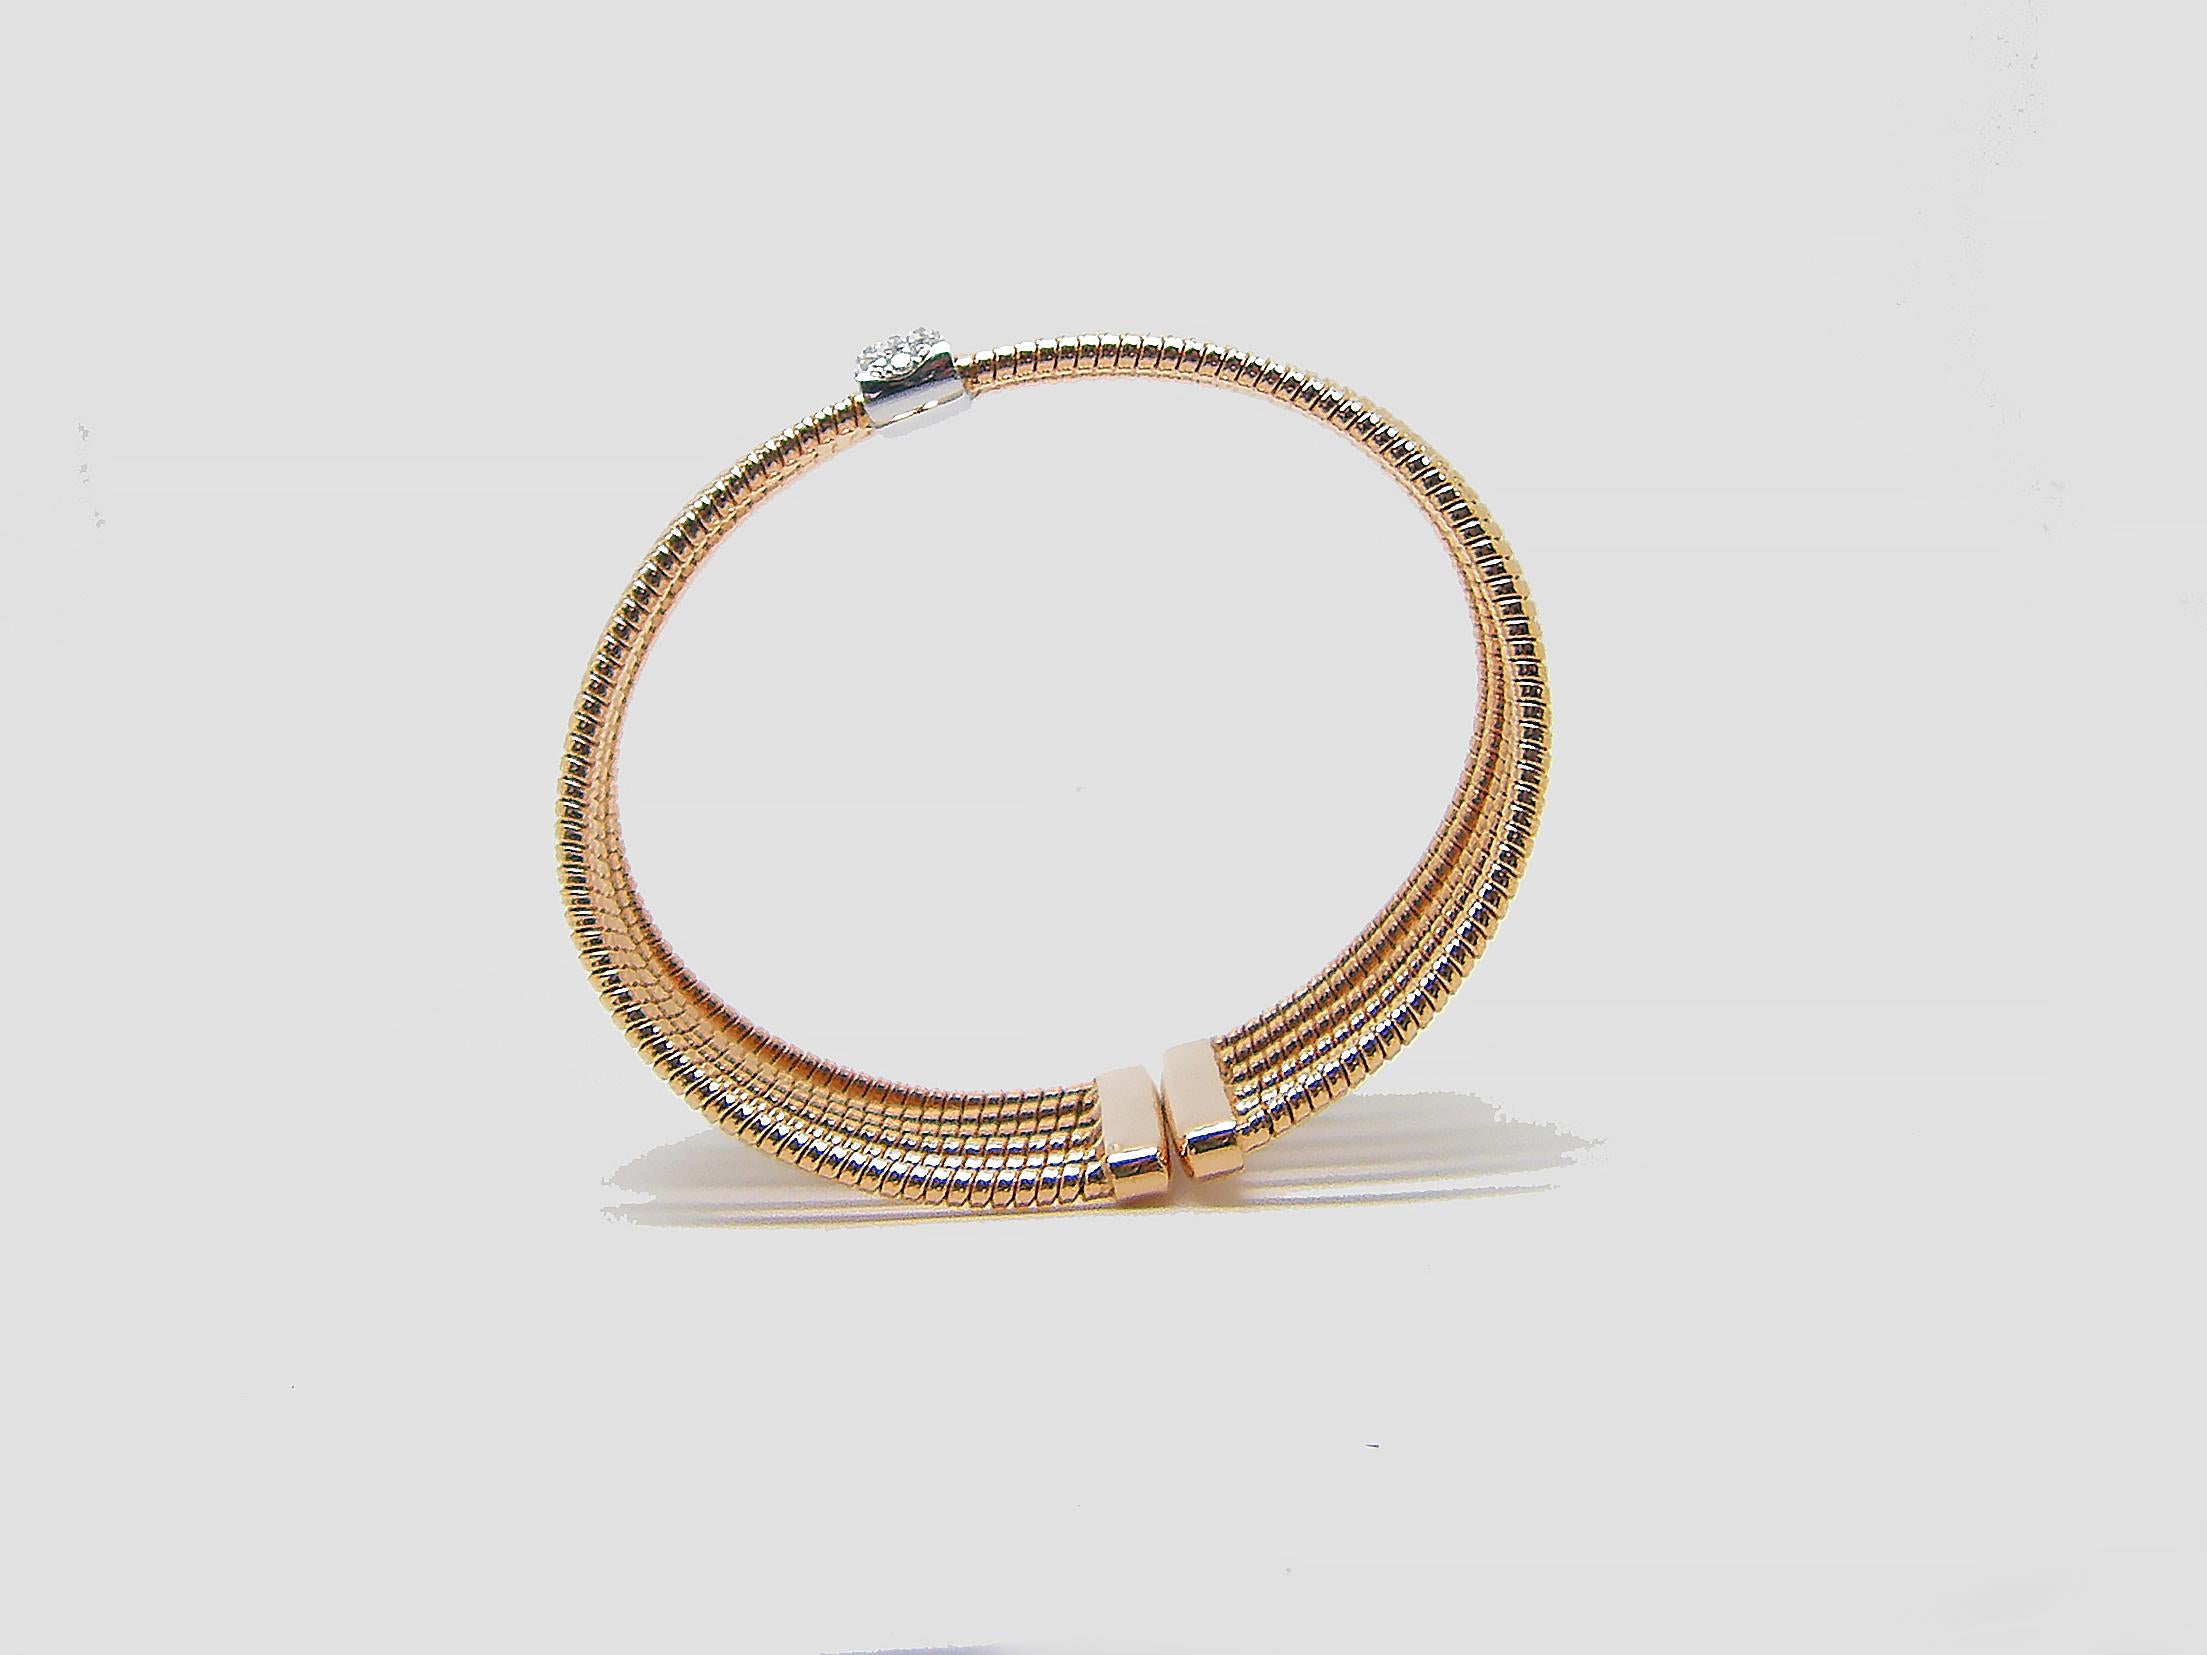 S.Georgios Designer Armreif Manschette Armband ist benutzerdefinierte von Rose und Weißgold 18 Karat gemacht. Die wunderschöne Manschette hat weiße Diamanten im Brillantschliff mit einem Gesamtgewicht von 0,52 Karat, die mikroskopisch eingefasst